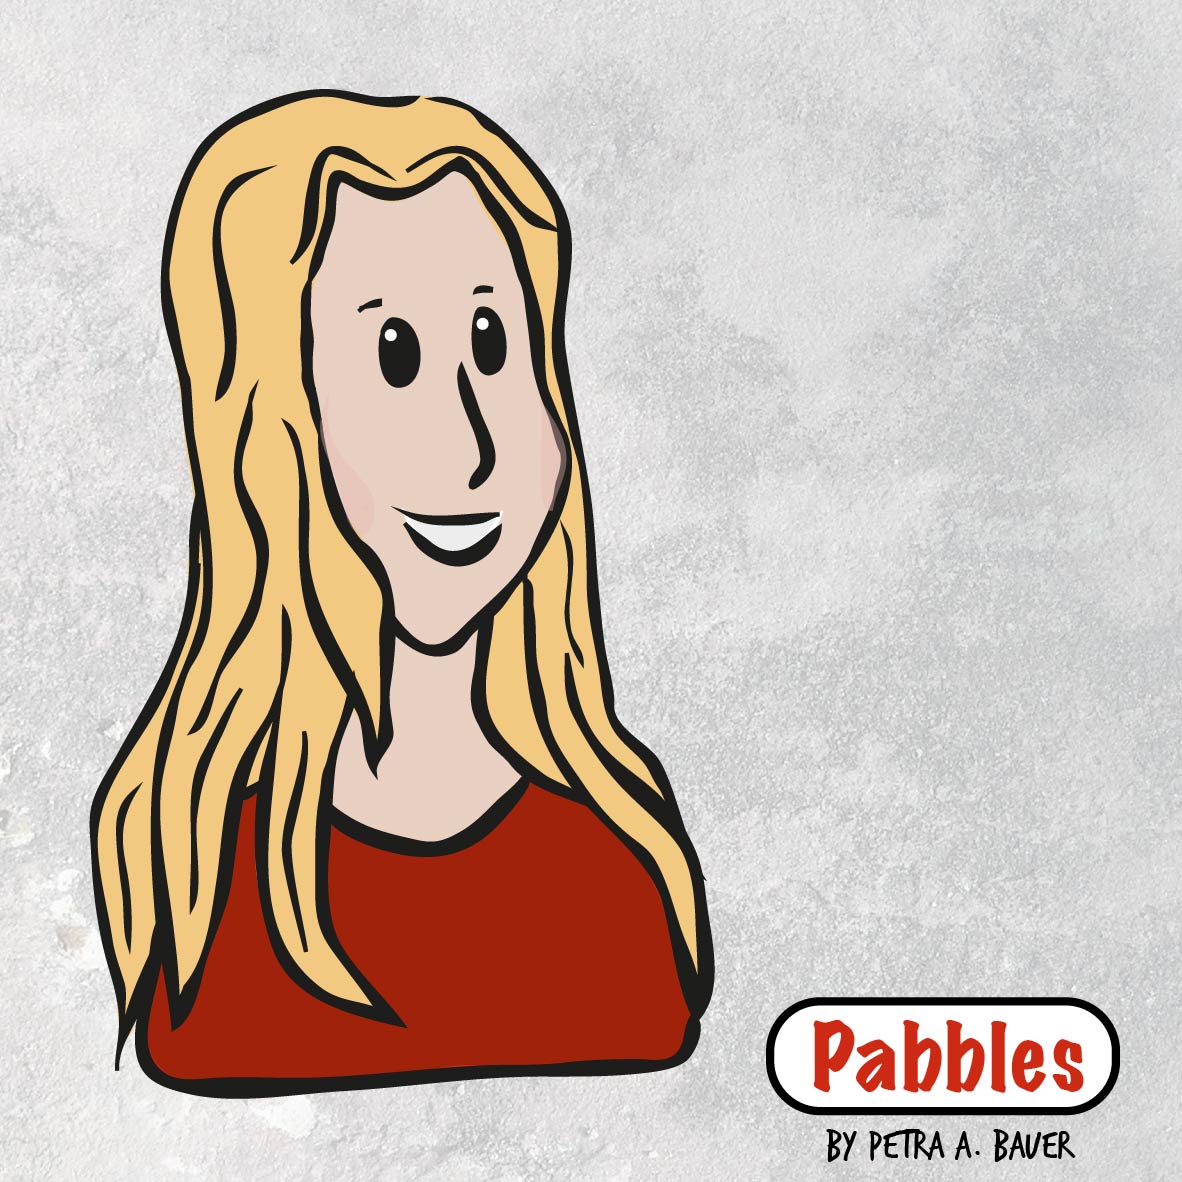 Pabbles von Petra A. Bauer 2018 im neuen Look.